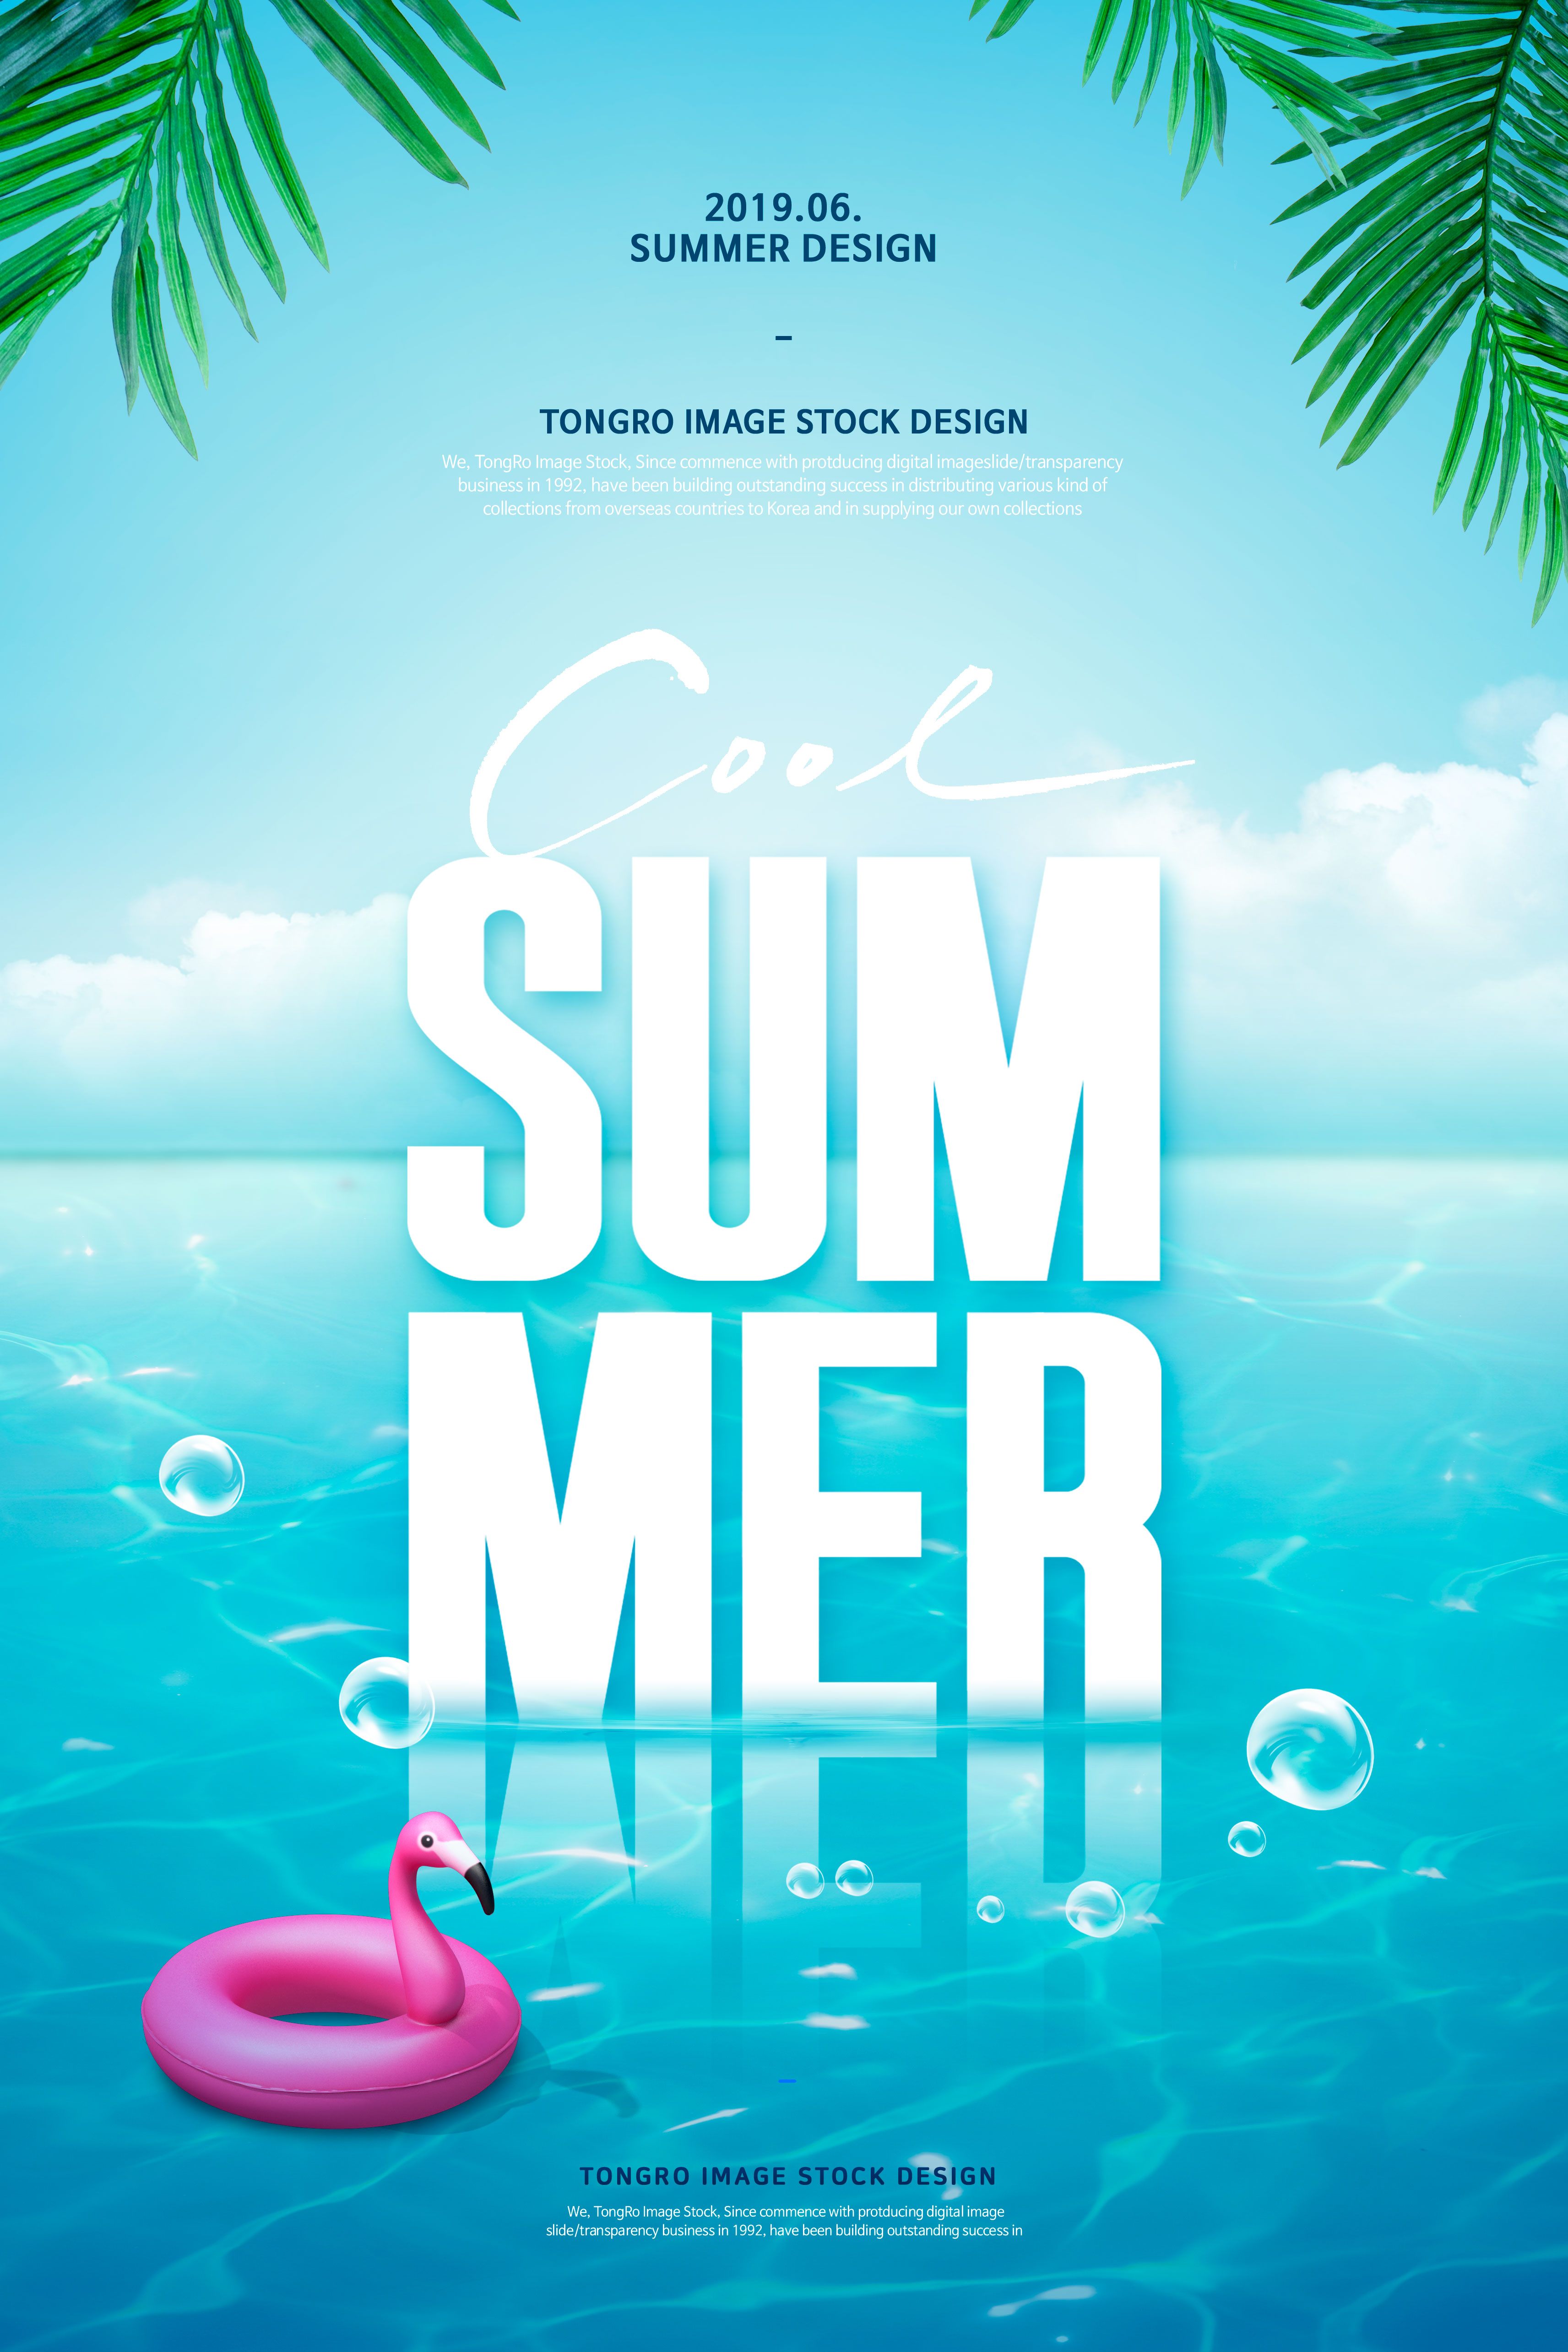 夏季酷暑清爽活动宣传广告海报设计套装插图(2)